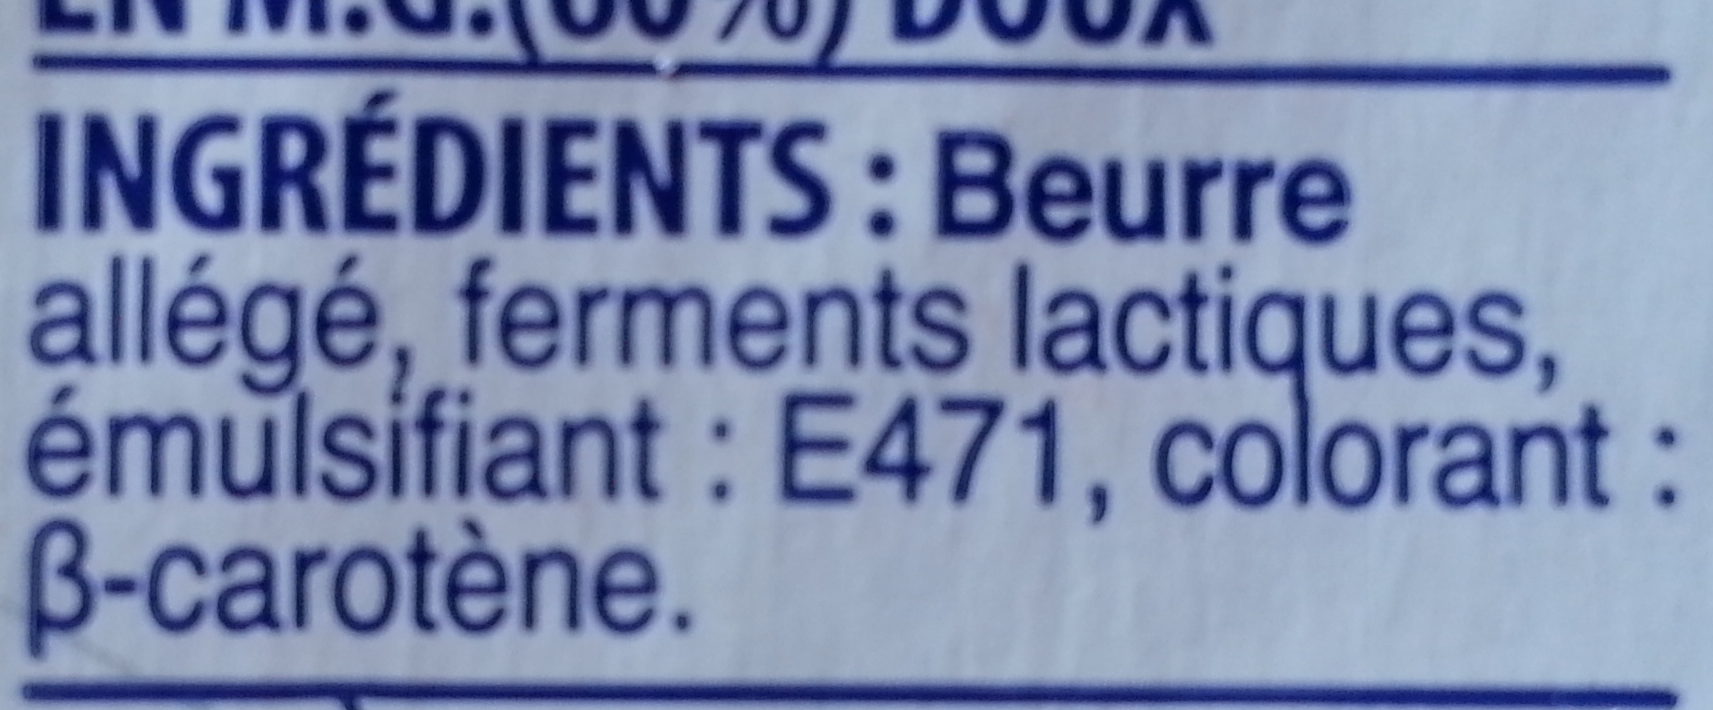 Beurre - Ingredients